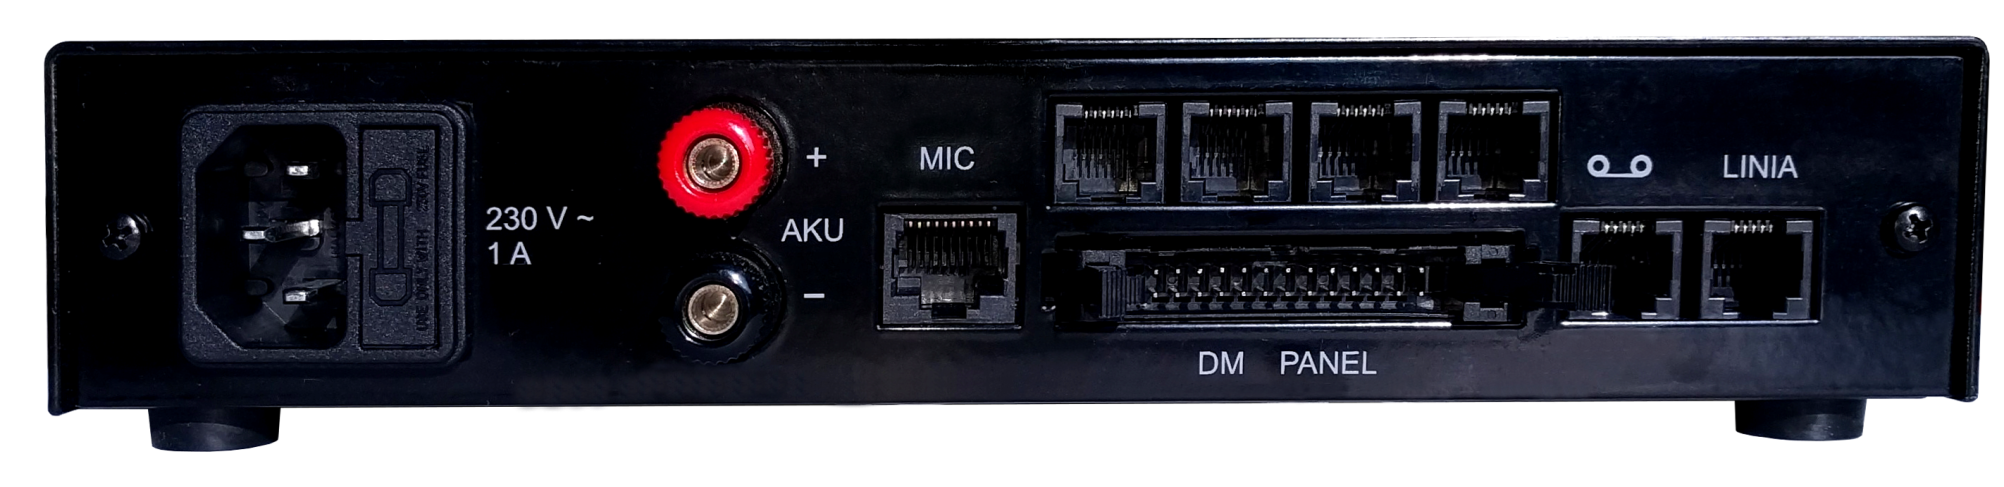 TRX SDM4600 moduł manipulatora